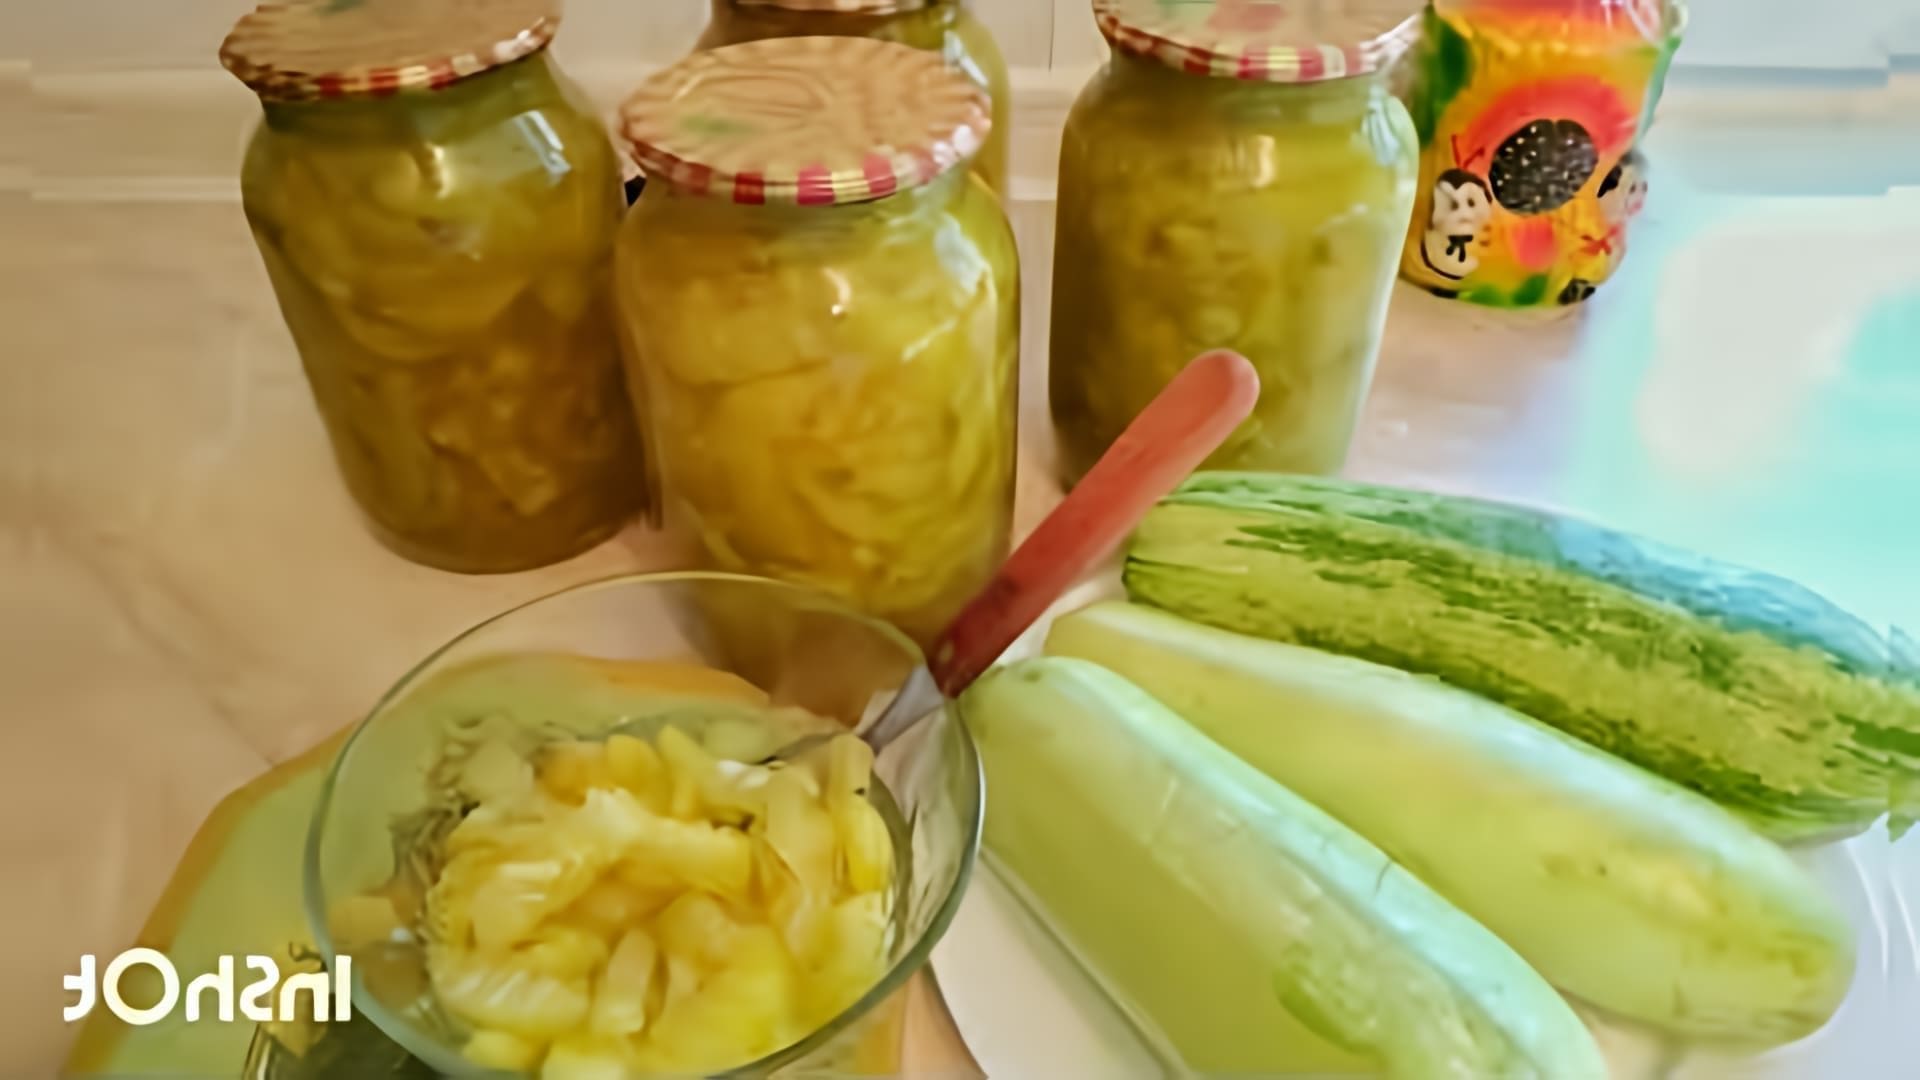 В этом видео демонстрируется процесс приготовления варенья из кабачков с апельсиновым соком и лимоном